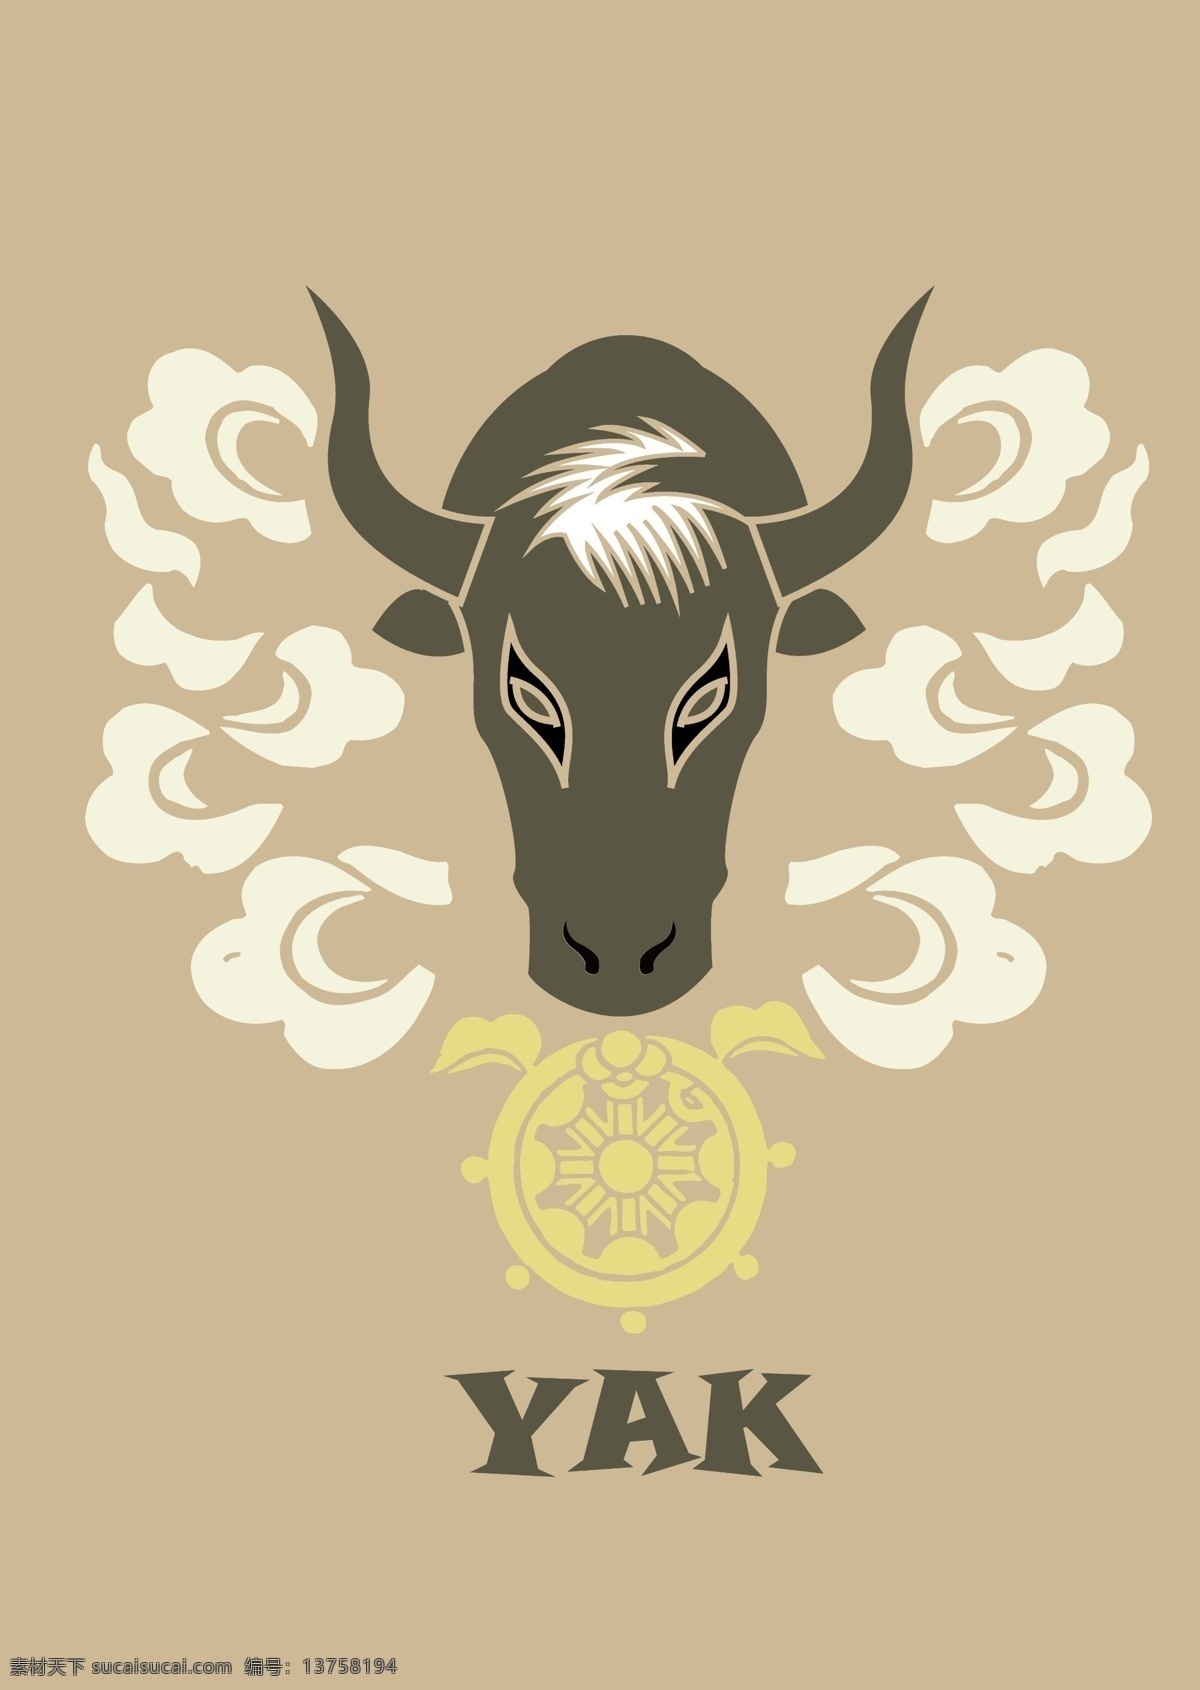 牦牛头 牦牛 标志 西藏 纹案 标志设计 广告设计模板 源文件